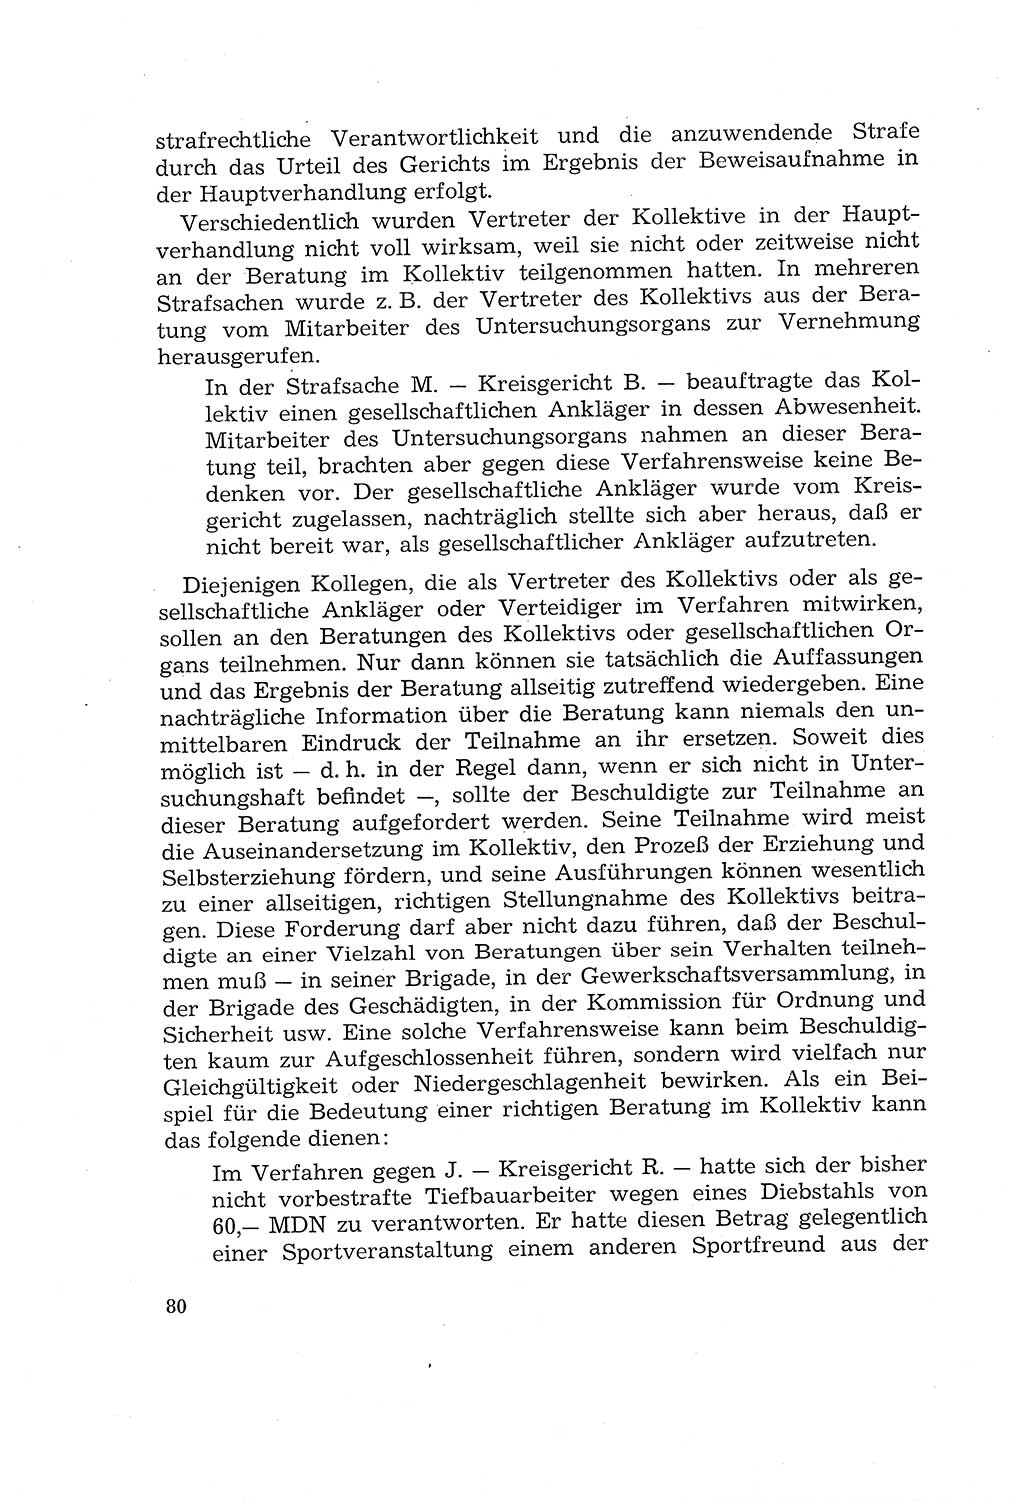 Die Mitwirkung der Werktätigen am Strafverfahren [Deutsche Demokratische Republik (DDR)] 1966, Seite 80 (Mitw. Str.-Verf. DDR 1966, S. 80)